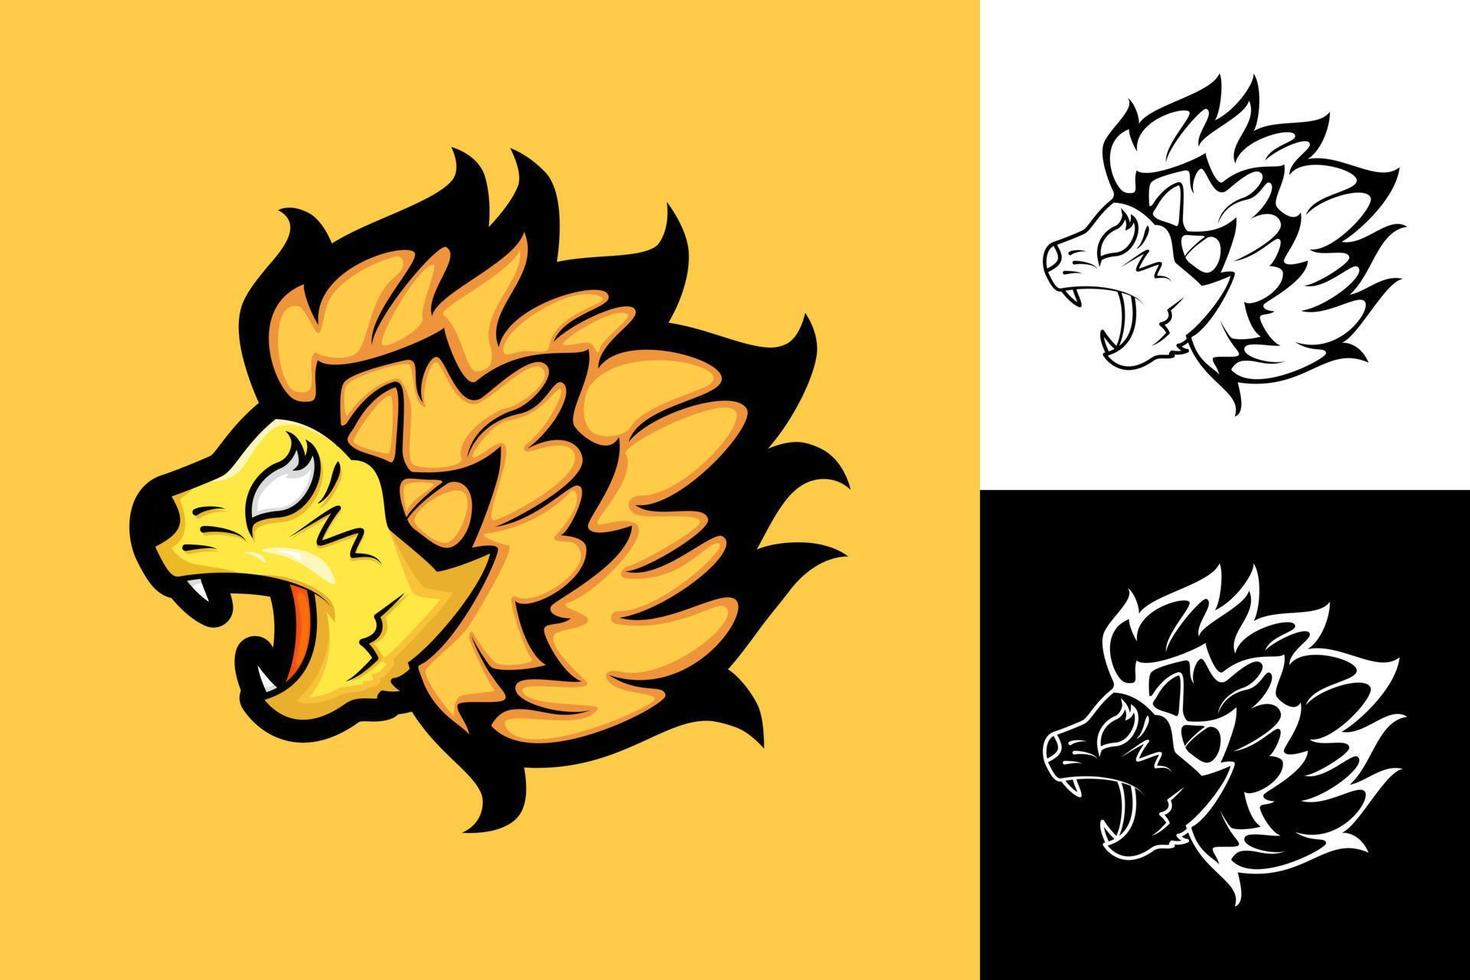 leeuwenkop illustratie met boze uitdrukking. mond open. geschikt voor logo, mascot, kunst, icoon, symbool. oranje, zwart en wit vector